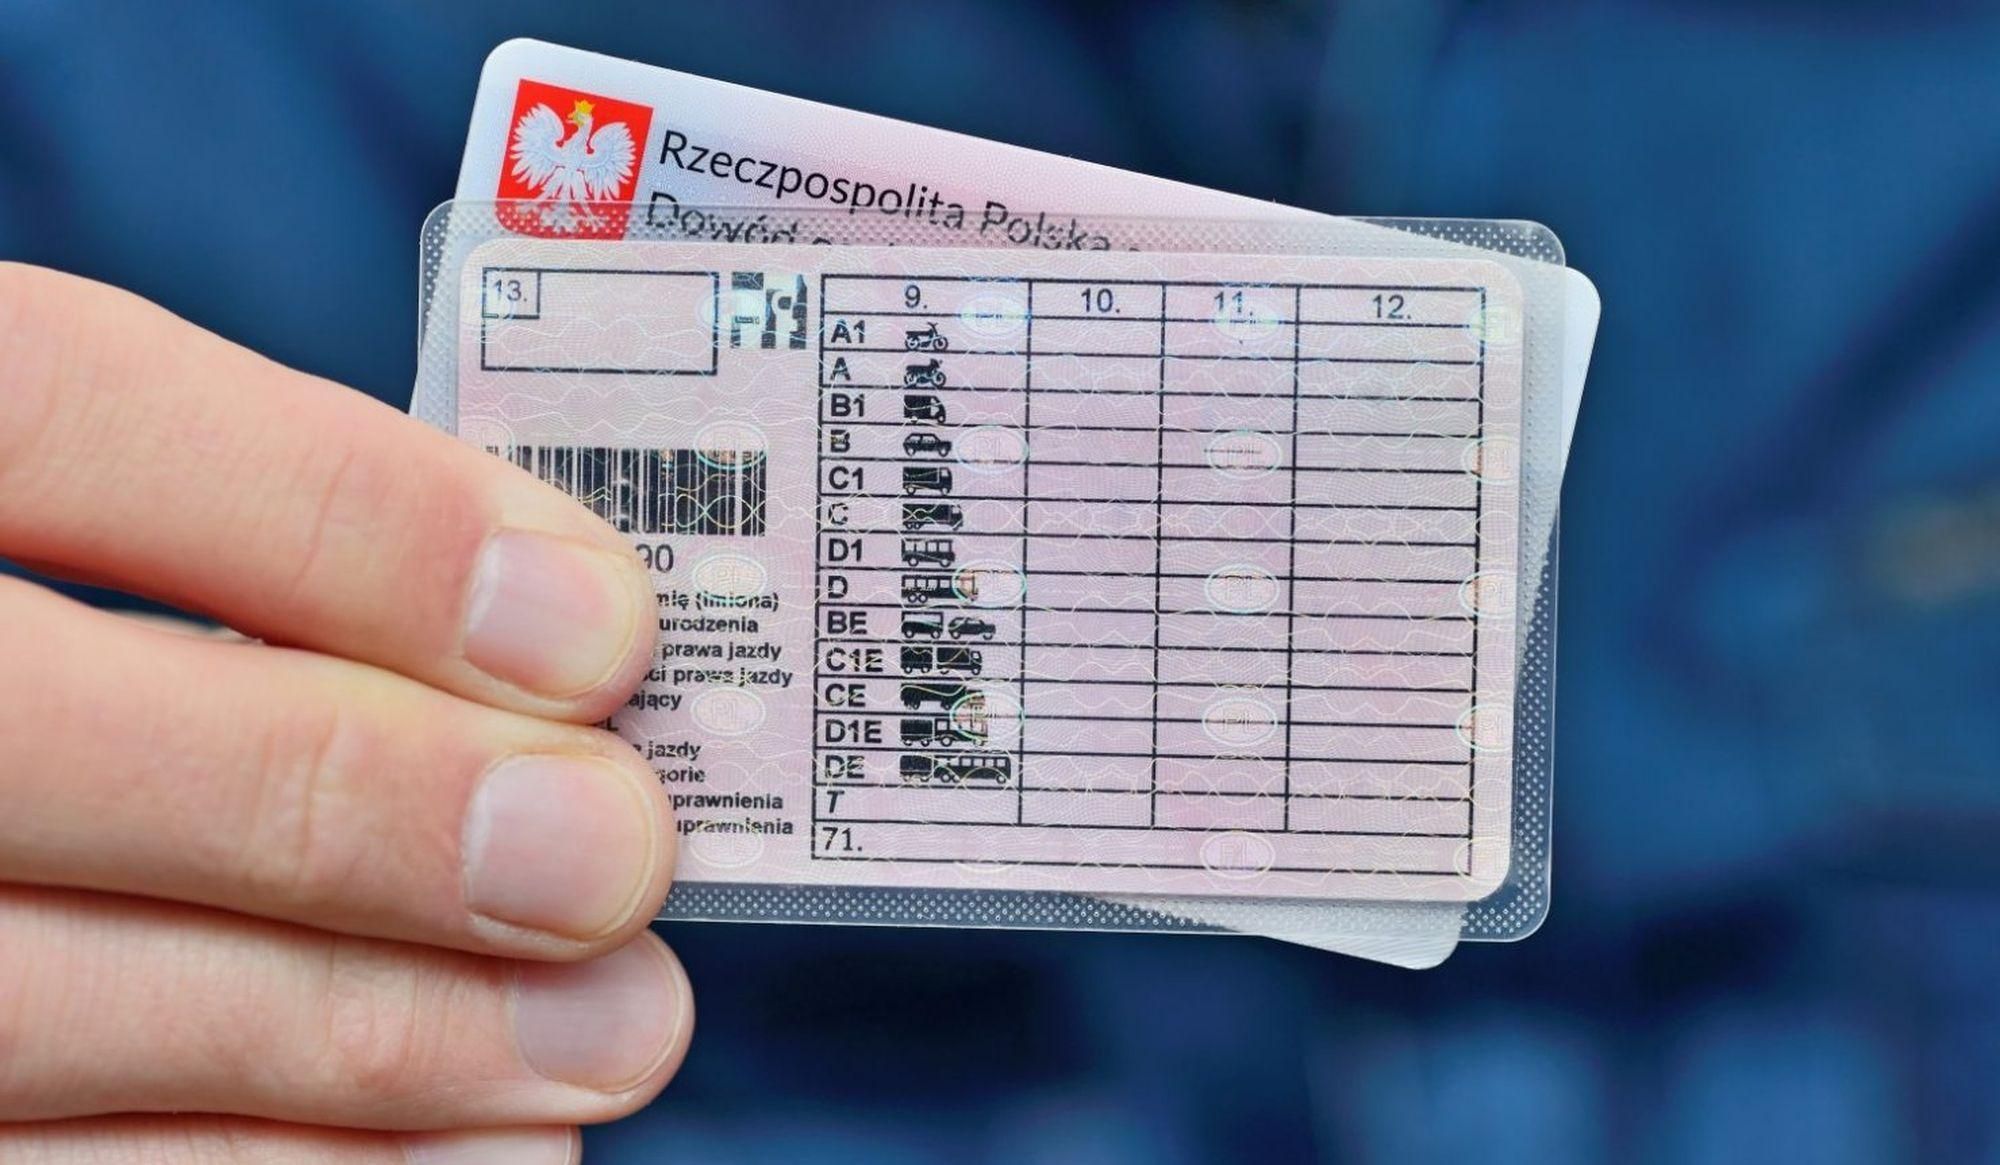 Срок действия некоторых польских водительских удостоверений продолят